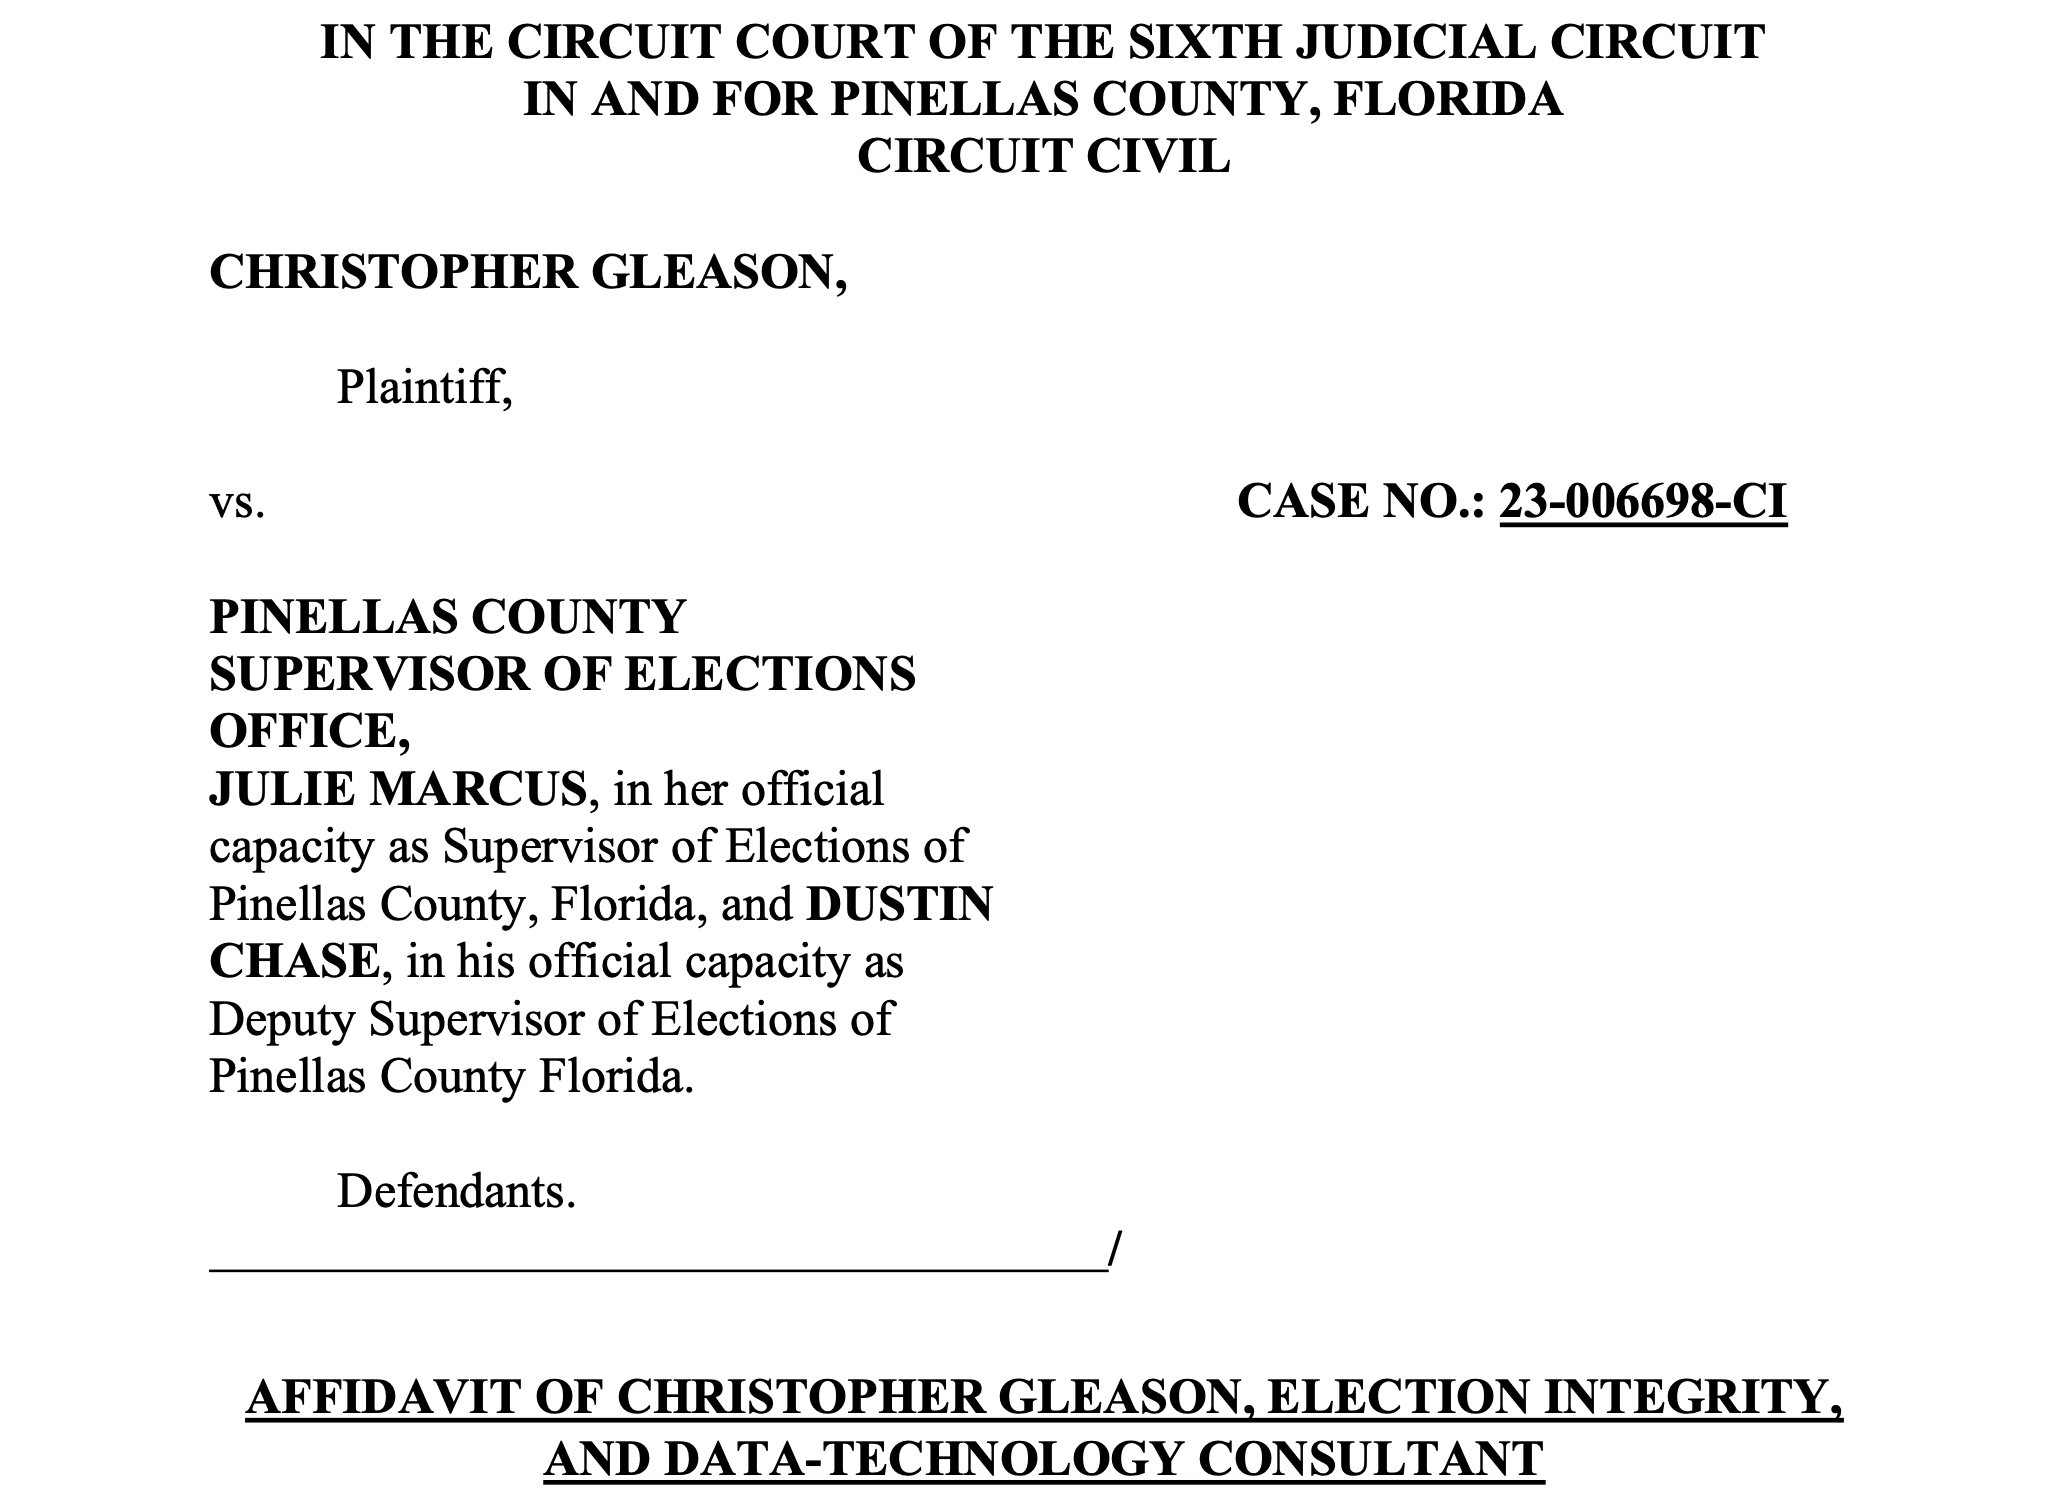 BREAKING: Gleason Files Affidavits In Pinellas County